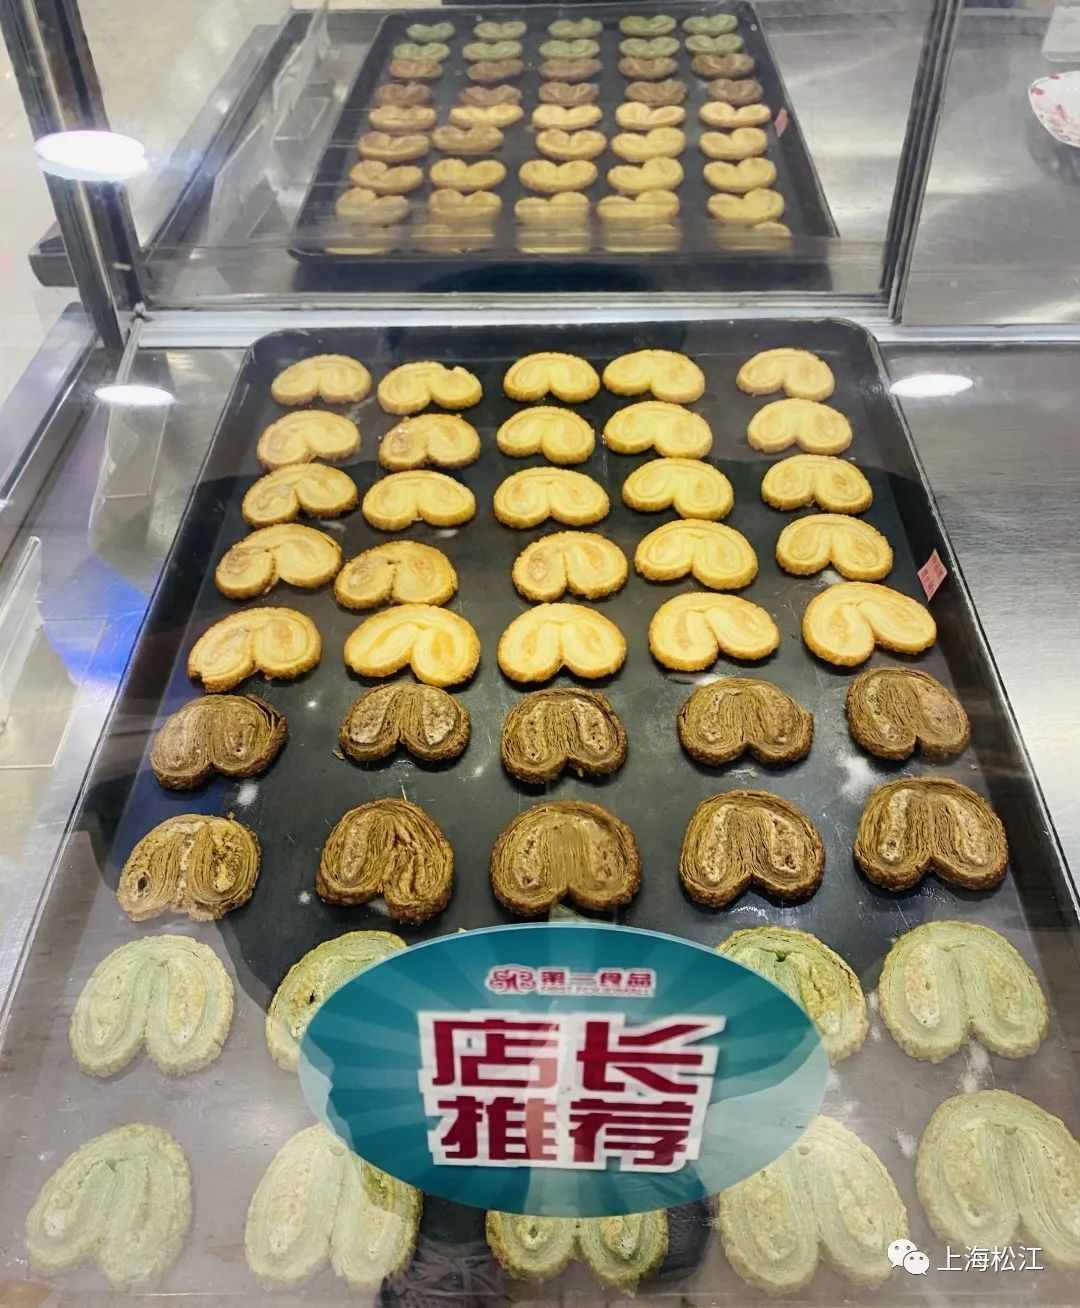 酥脆喷香！人气爆棚的海派西点，在松江这家宝藏美食店就能买到